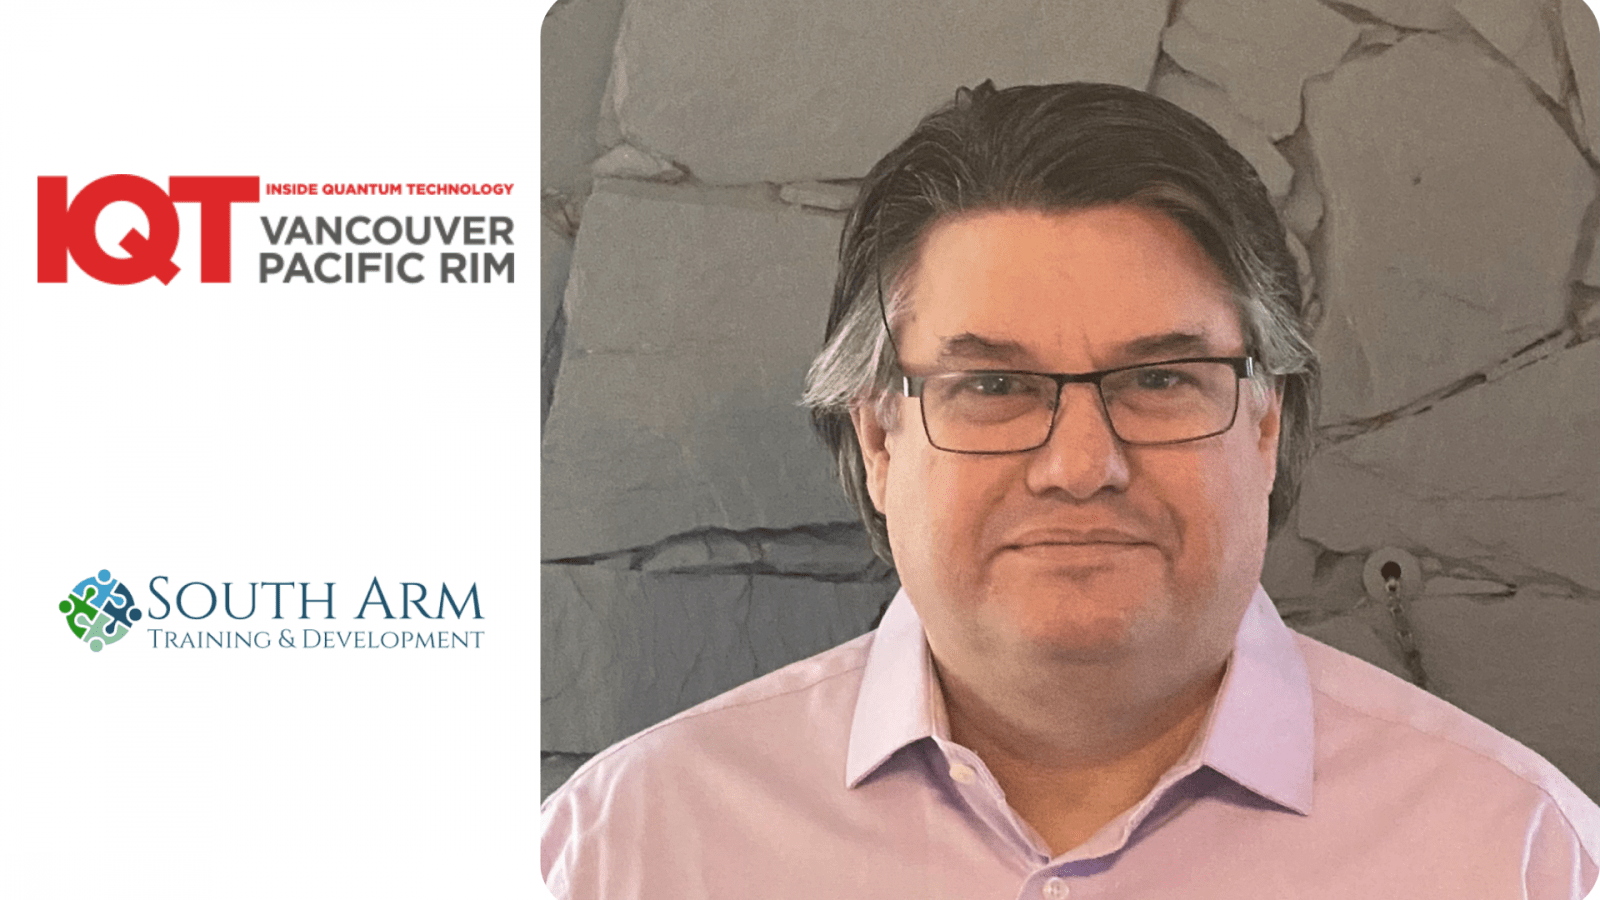 Dennis Green, Kepala Sekolah di South Arm Training and Development Ltd. adalah Pembicara untuk konferensi IQT Vancouver/Pacific Rim tahun 2024